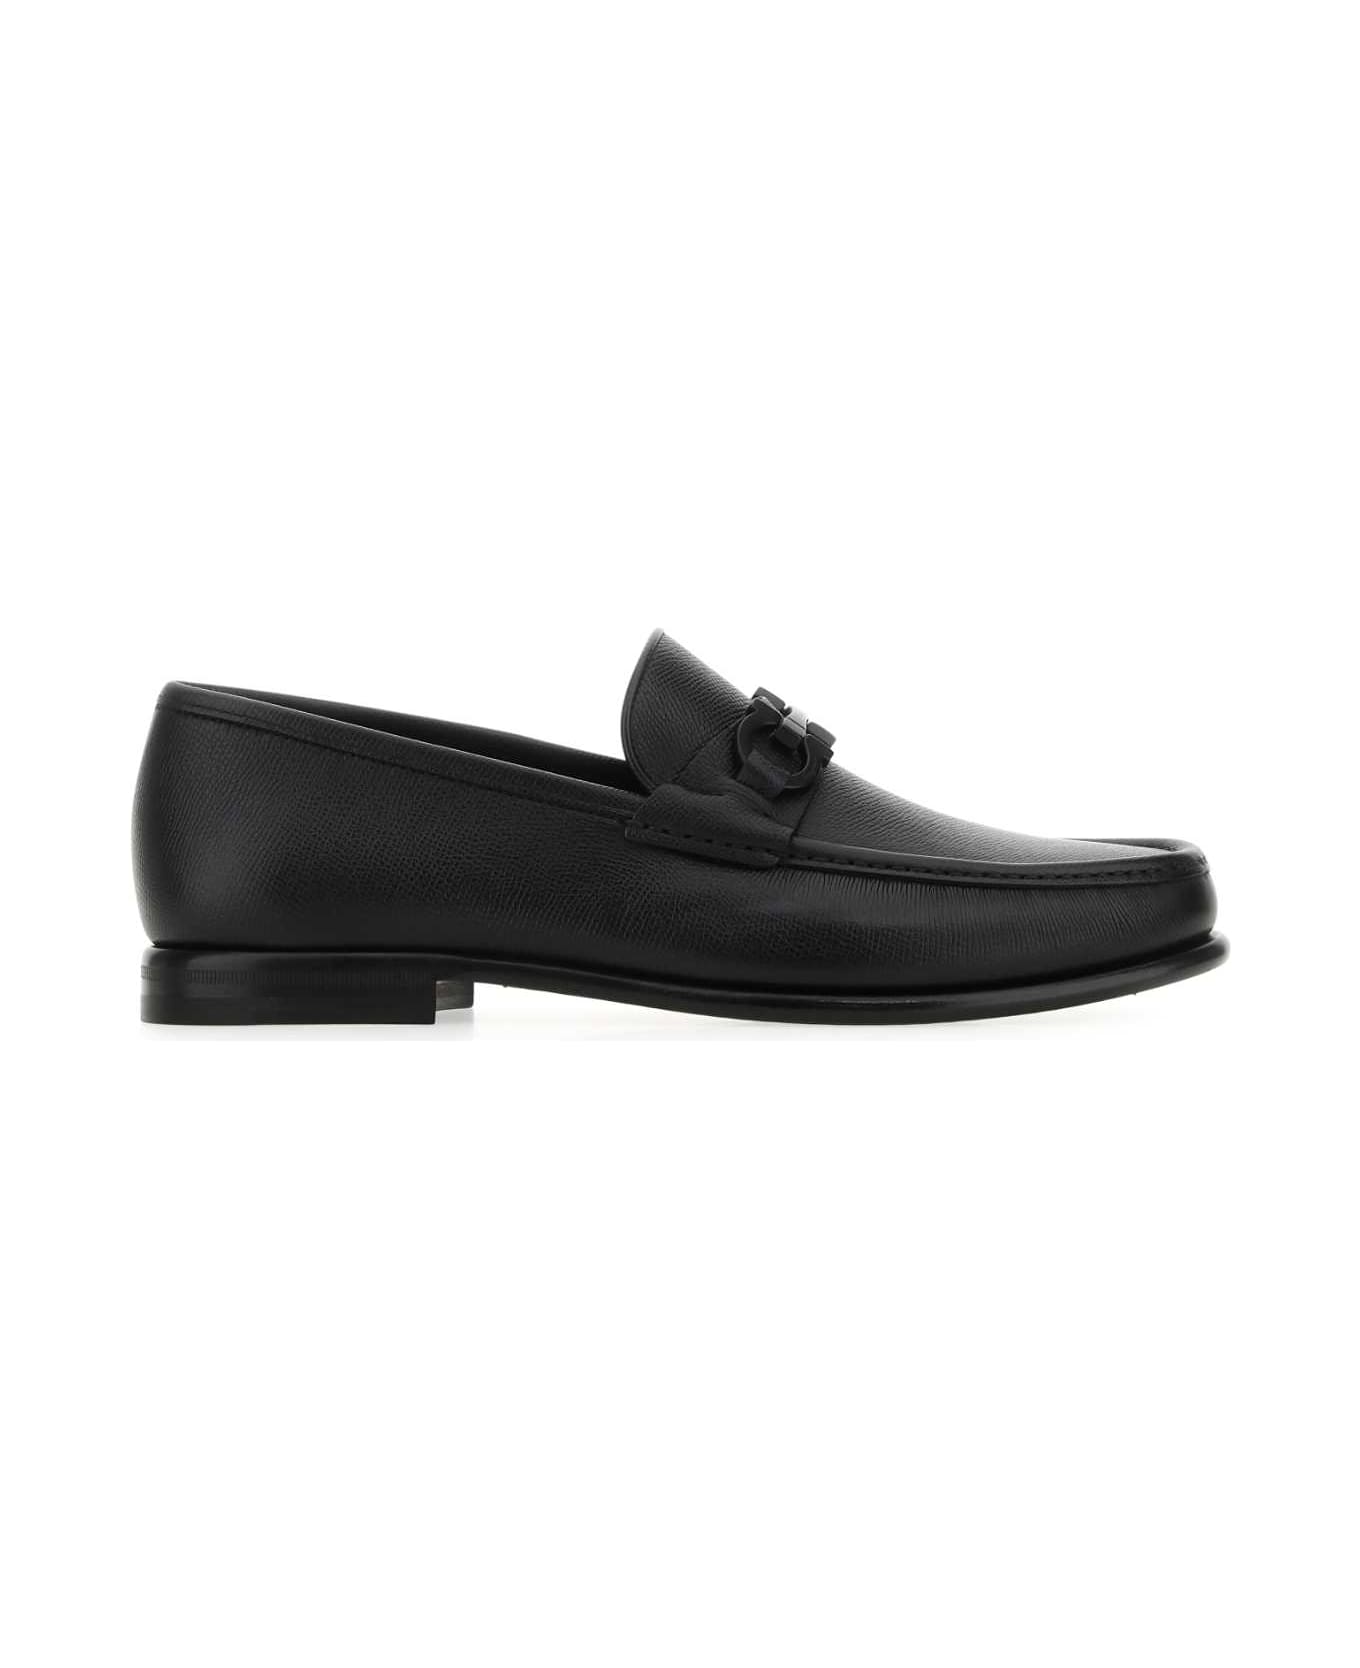 Ferragamo Black Leather Loafers - NERO